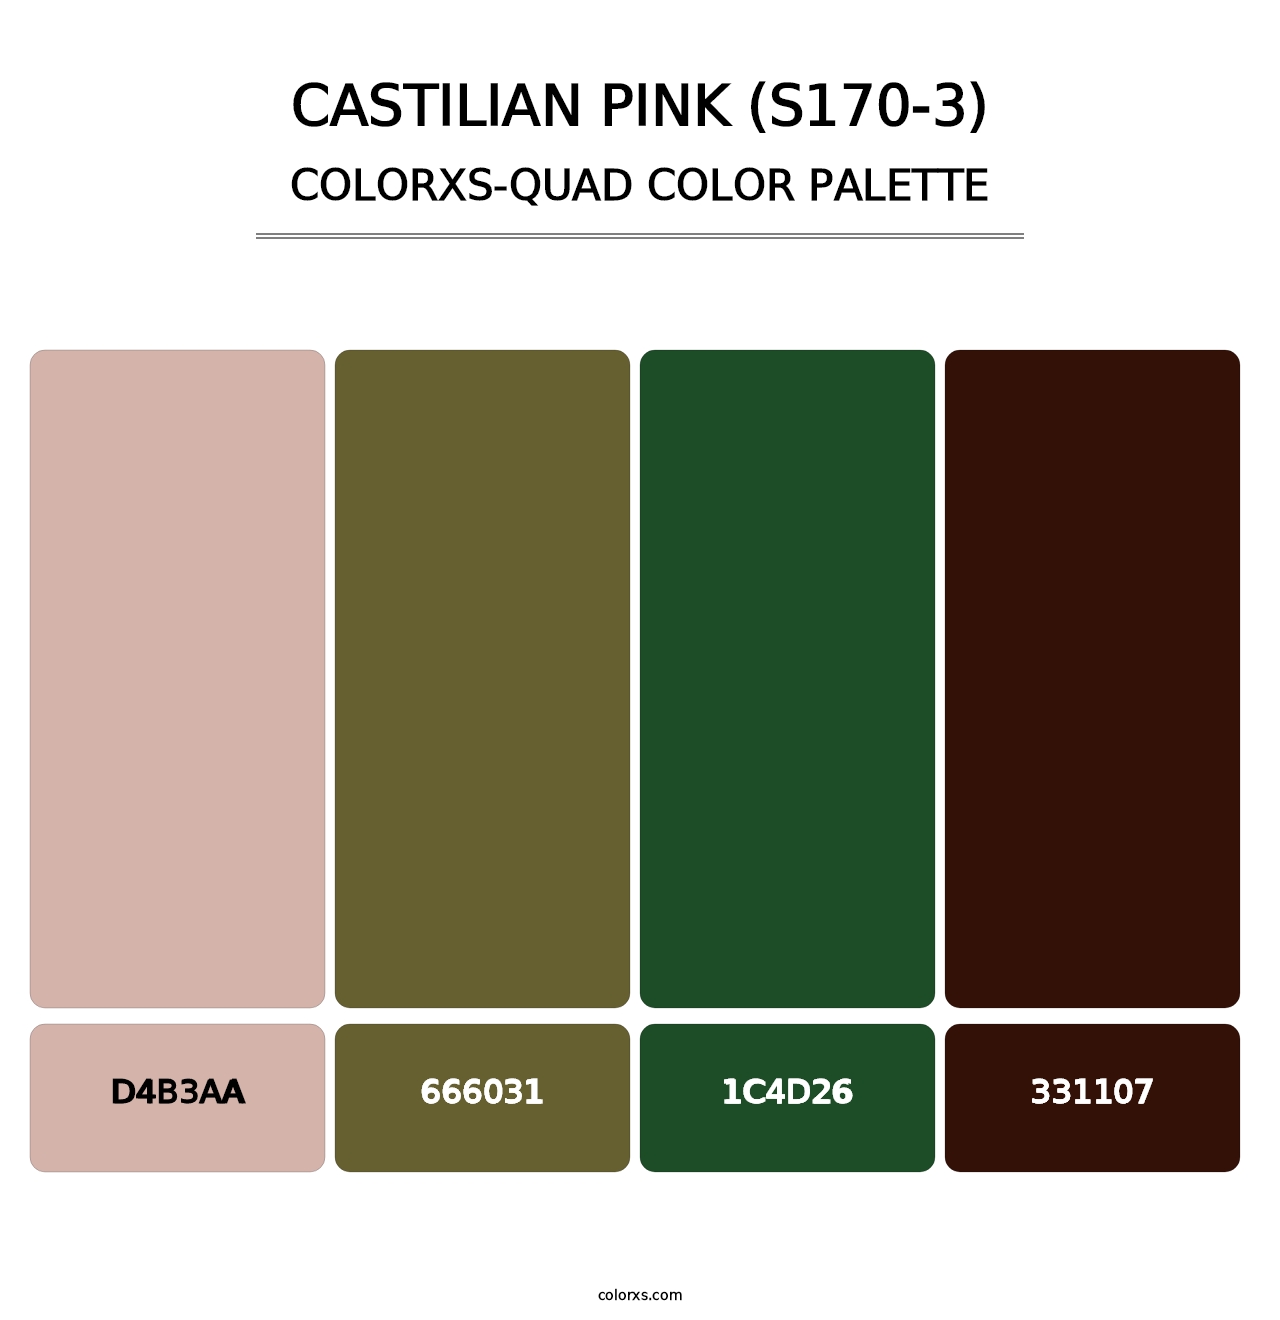 Castilian Pink (S170-3) - Colorxs Quad Palette